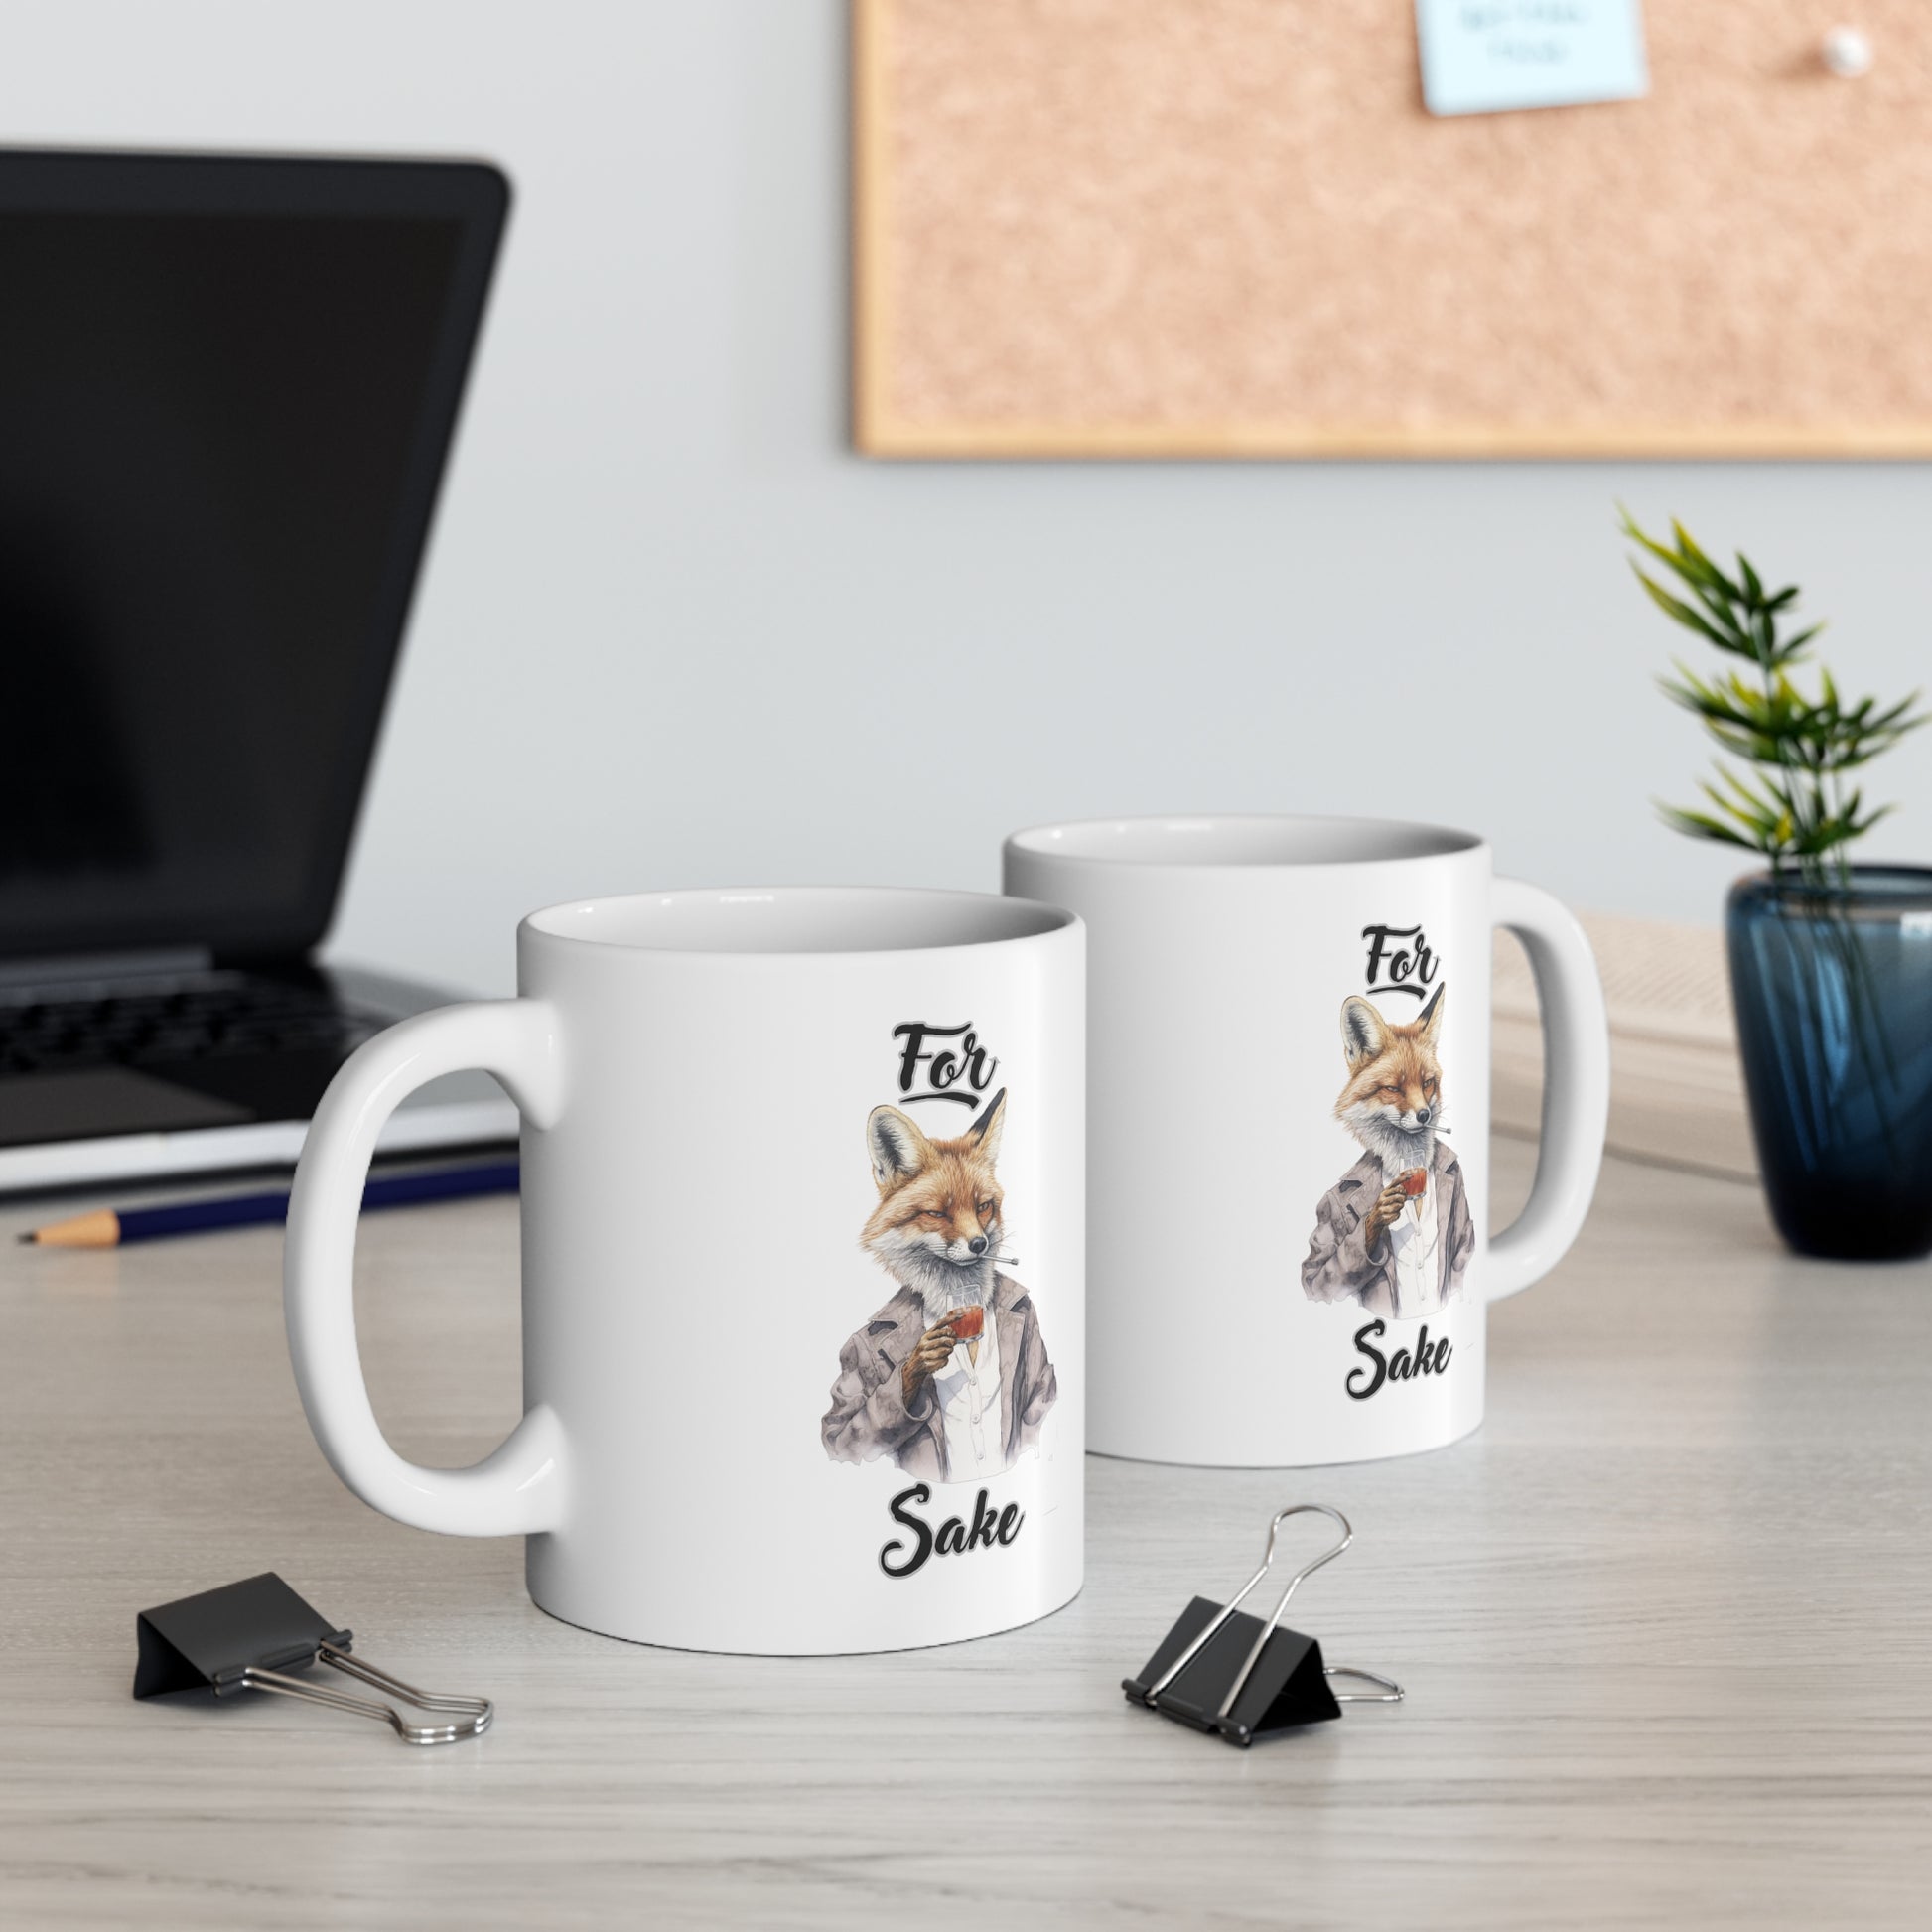 For Fox Sake: Fox Coffee Mug with Sayings - Funny Mug for Coffee Lovers, 11oz Sarcastic Mug Mug   